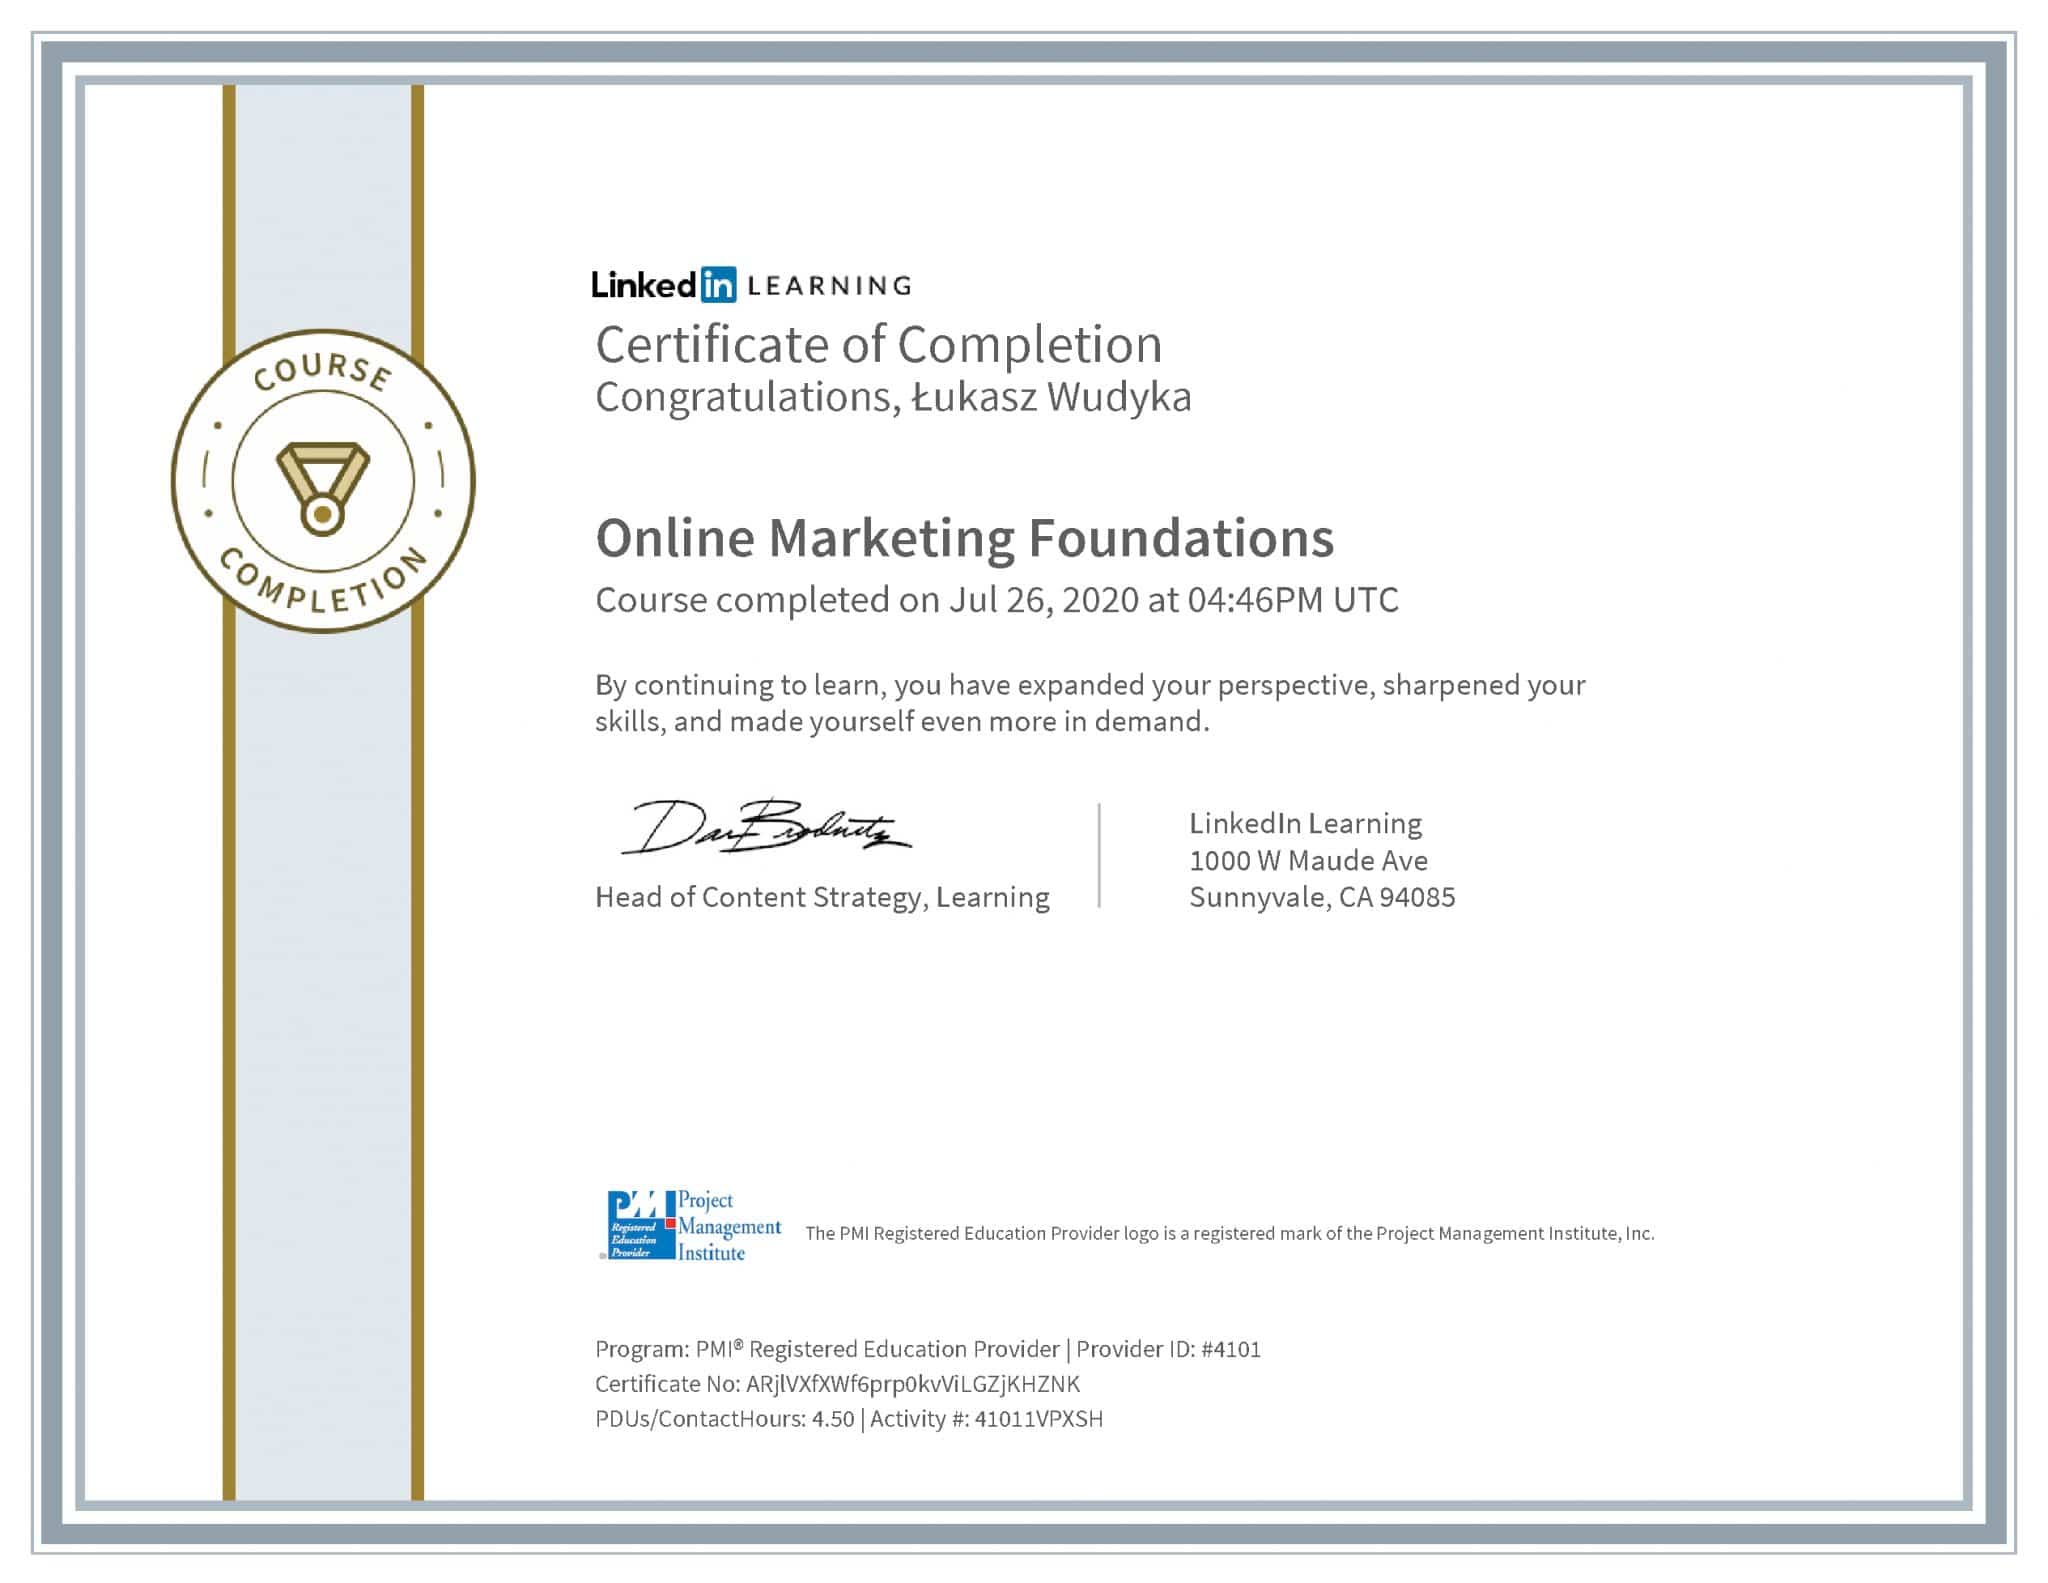 Łukasz Wudyka certyfikat LinkedIn Online Marketing Foundations PMI